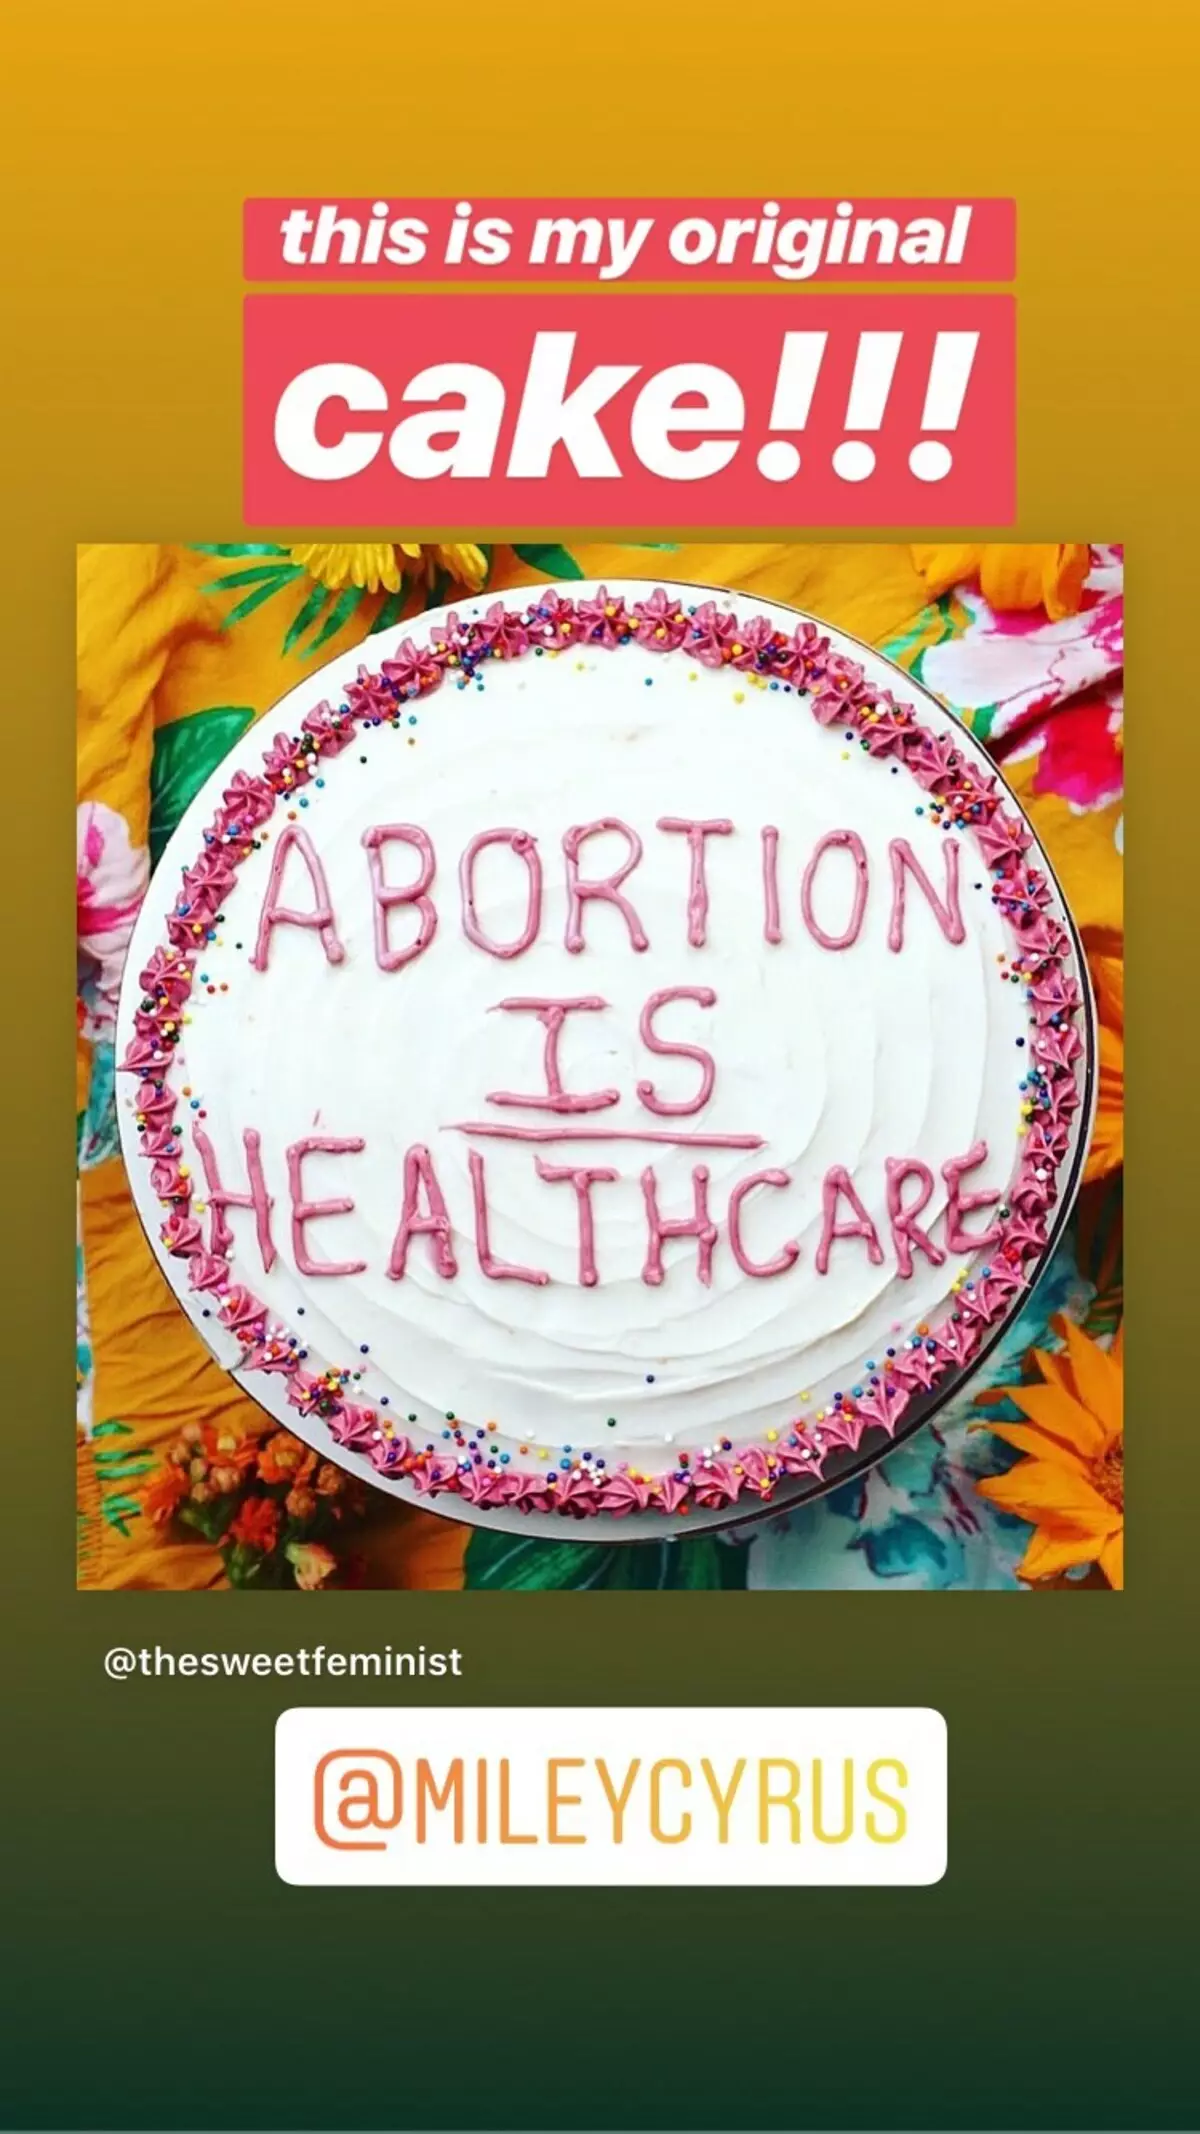 माइली साइरस ने गर्भपात के समर्थन में एक केक के साथ फोटो के लिए माफ़ी मांगी 61711_3